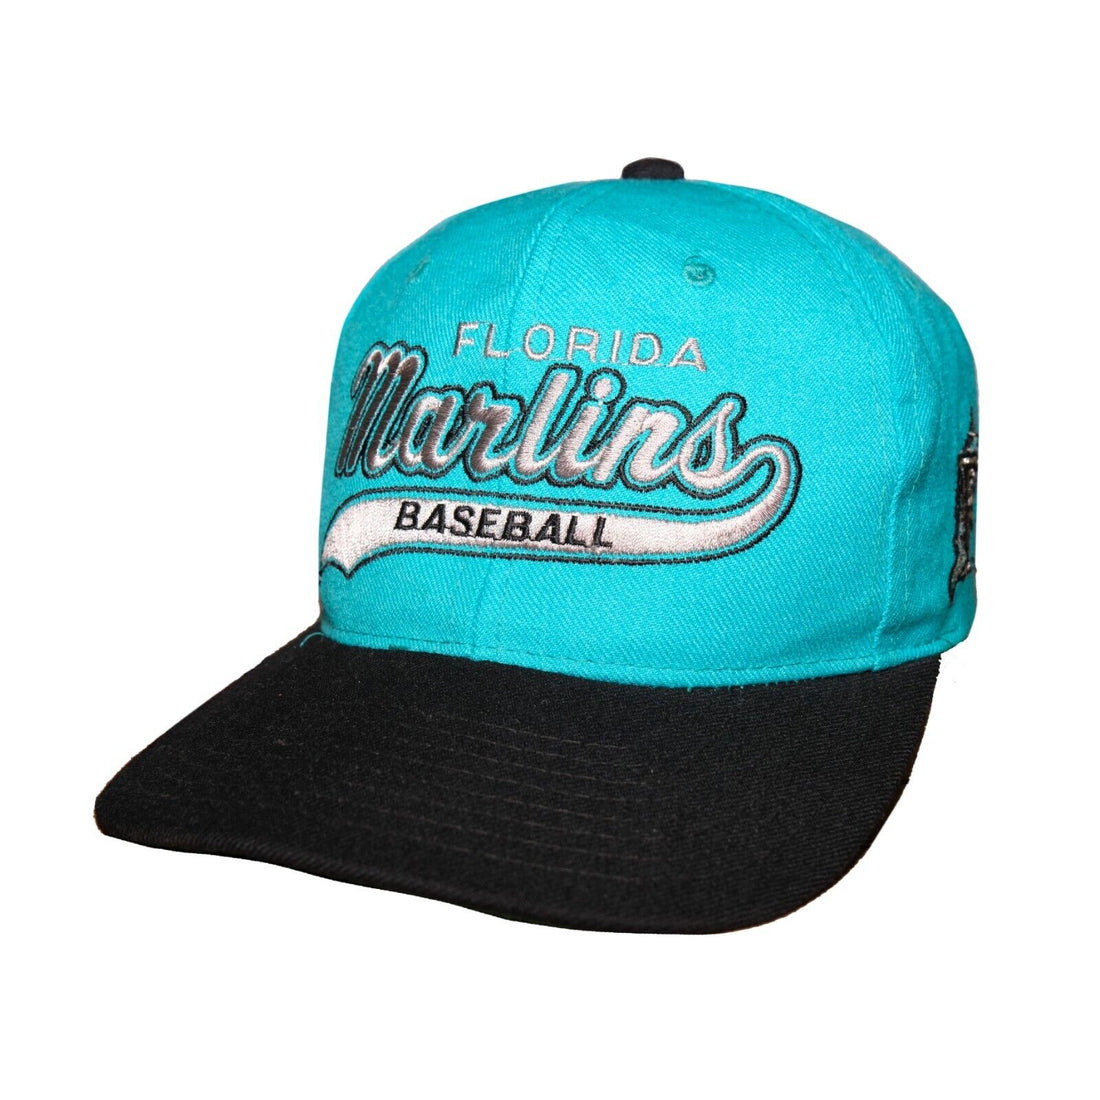 Vintage Florida Marlins Starter Snapback Hat OSFA Teal MLB